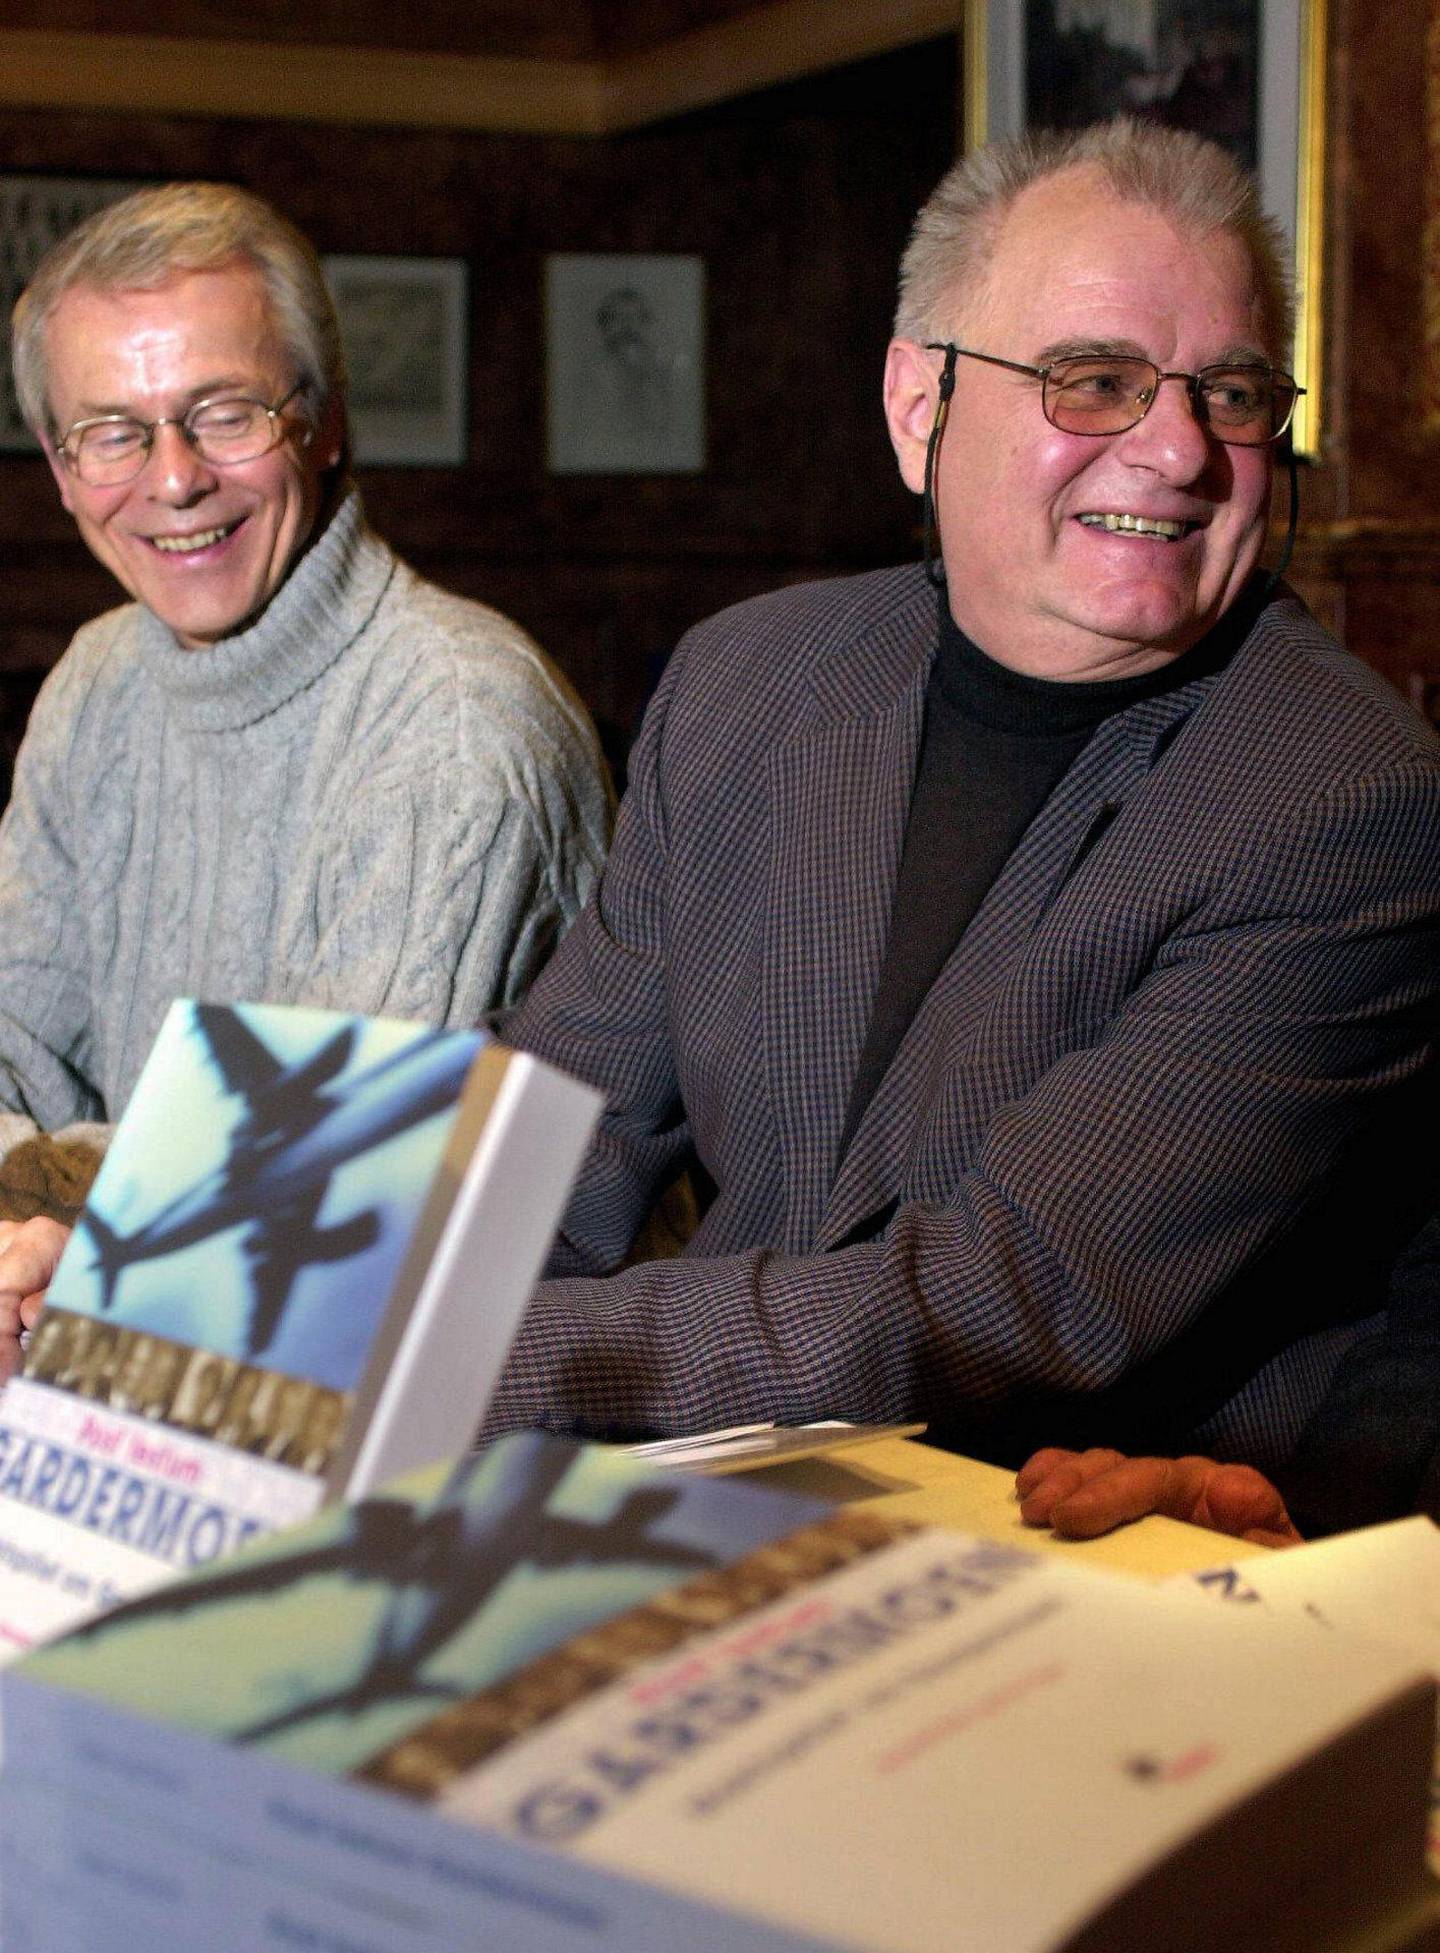 Finn Sjue og Ronald Bye presenterer boka «Post Festum Gardermoen – maktspillet om Gardermoen» i 2001. De to har nå publisert boka om «Ravnen» sammen. Bye døde i 2018.
Foto: Erlend Ass/NTB scanpix